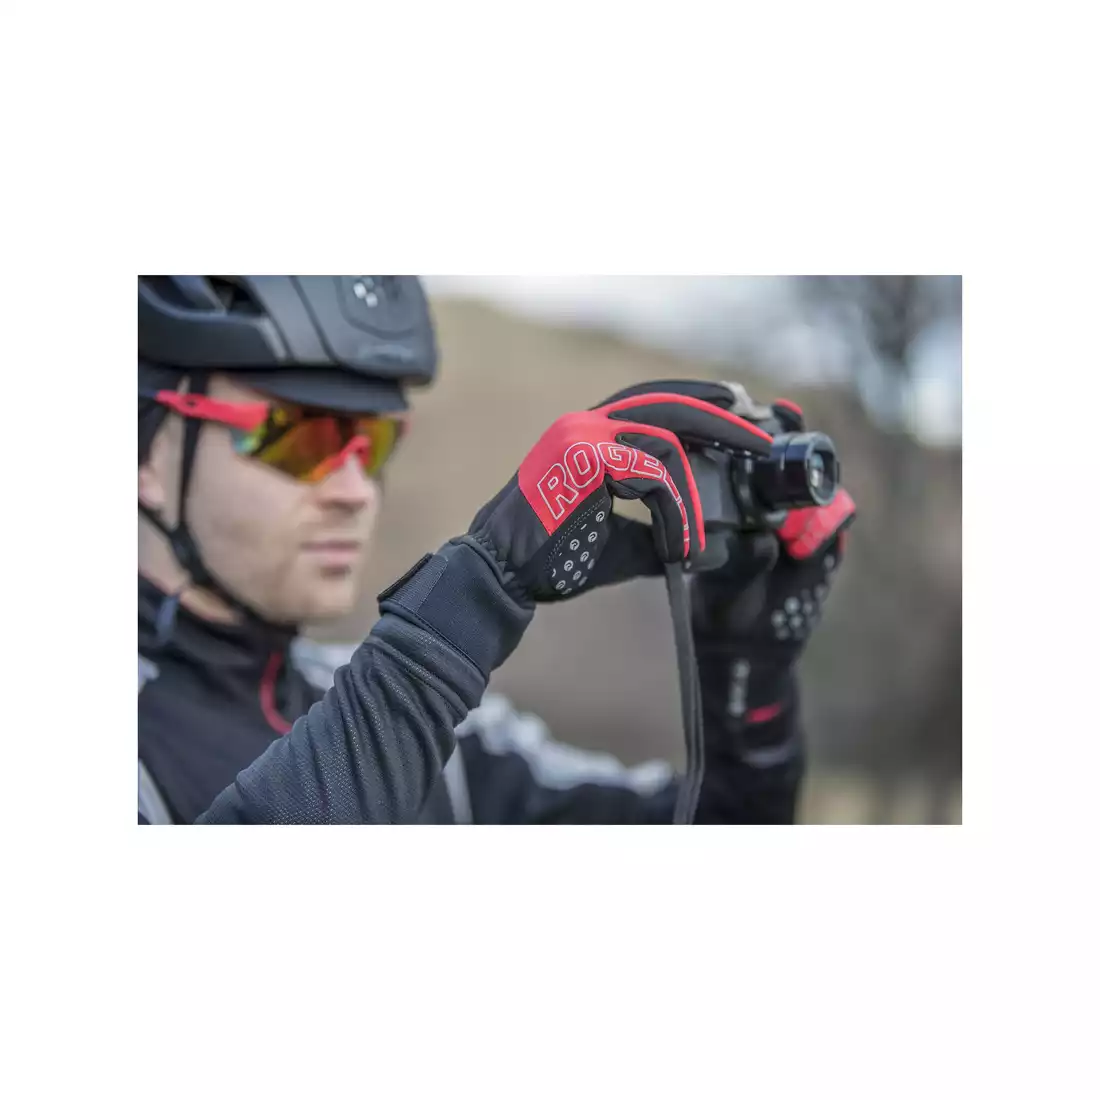 ROGELLI STORM zimowe rękawiczki rowerowe, softshell, czarne